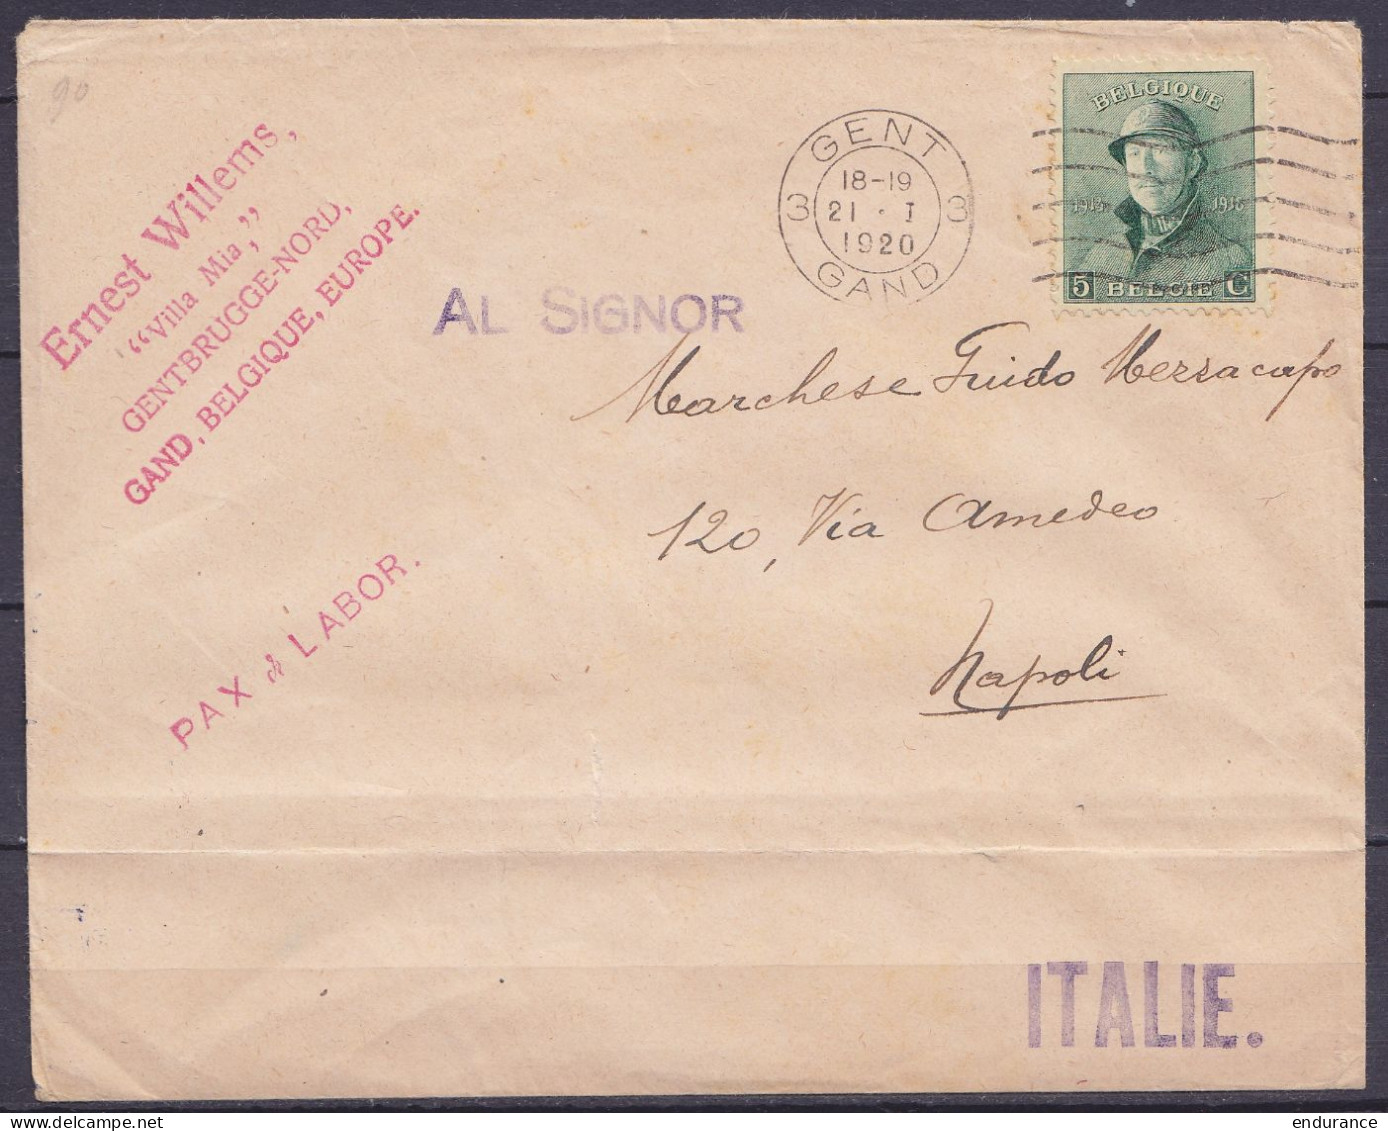 Env. Affr. N°167 (tarif Imprimés) Flam. "GENT 3/12.I 1920/ GAND 3" Pour NAPOLI (Naples) Italie - 1919-1920  Cascos De Trinchera